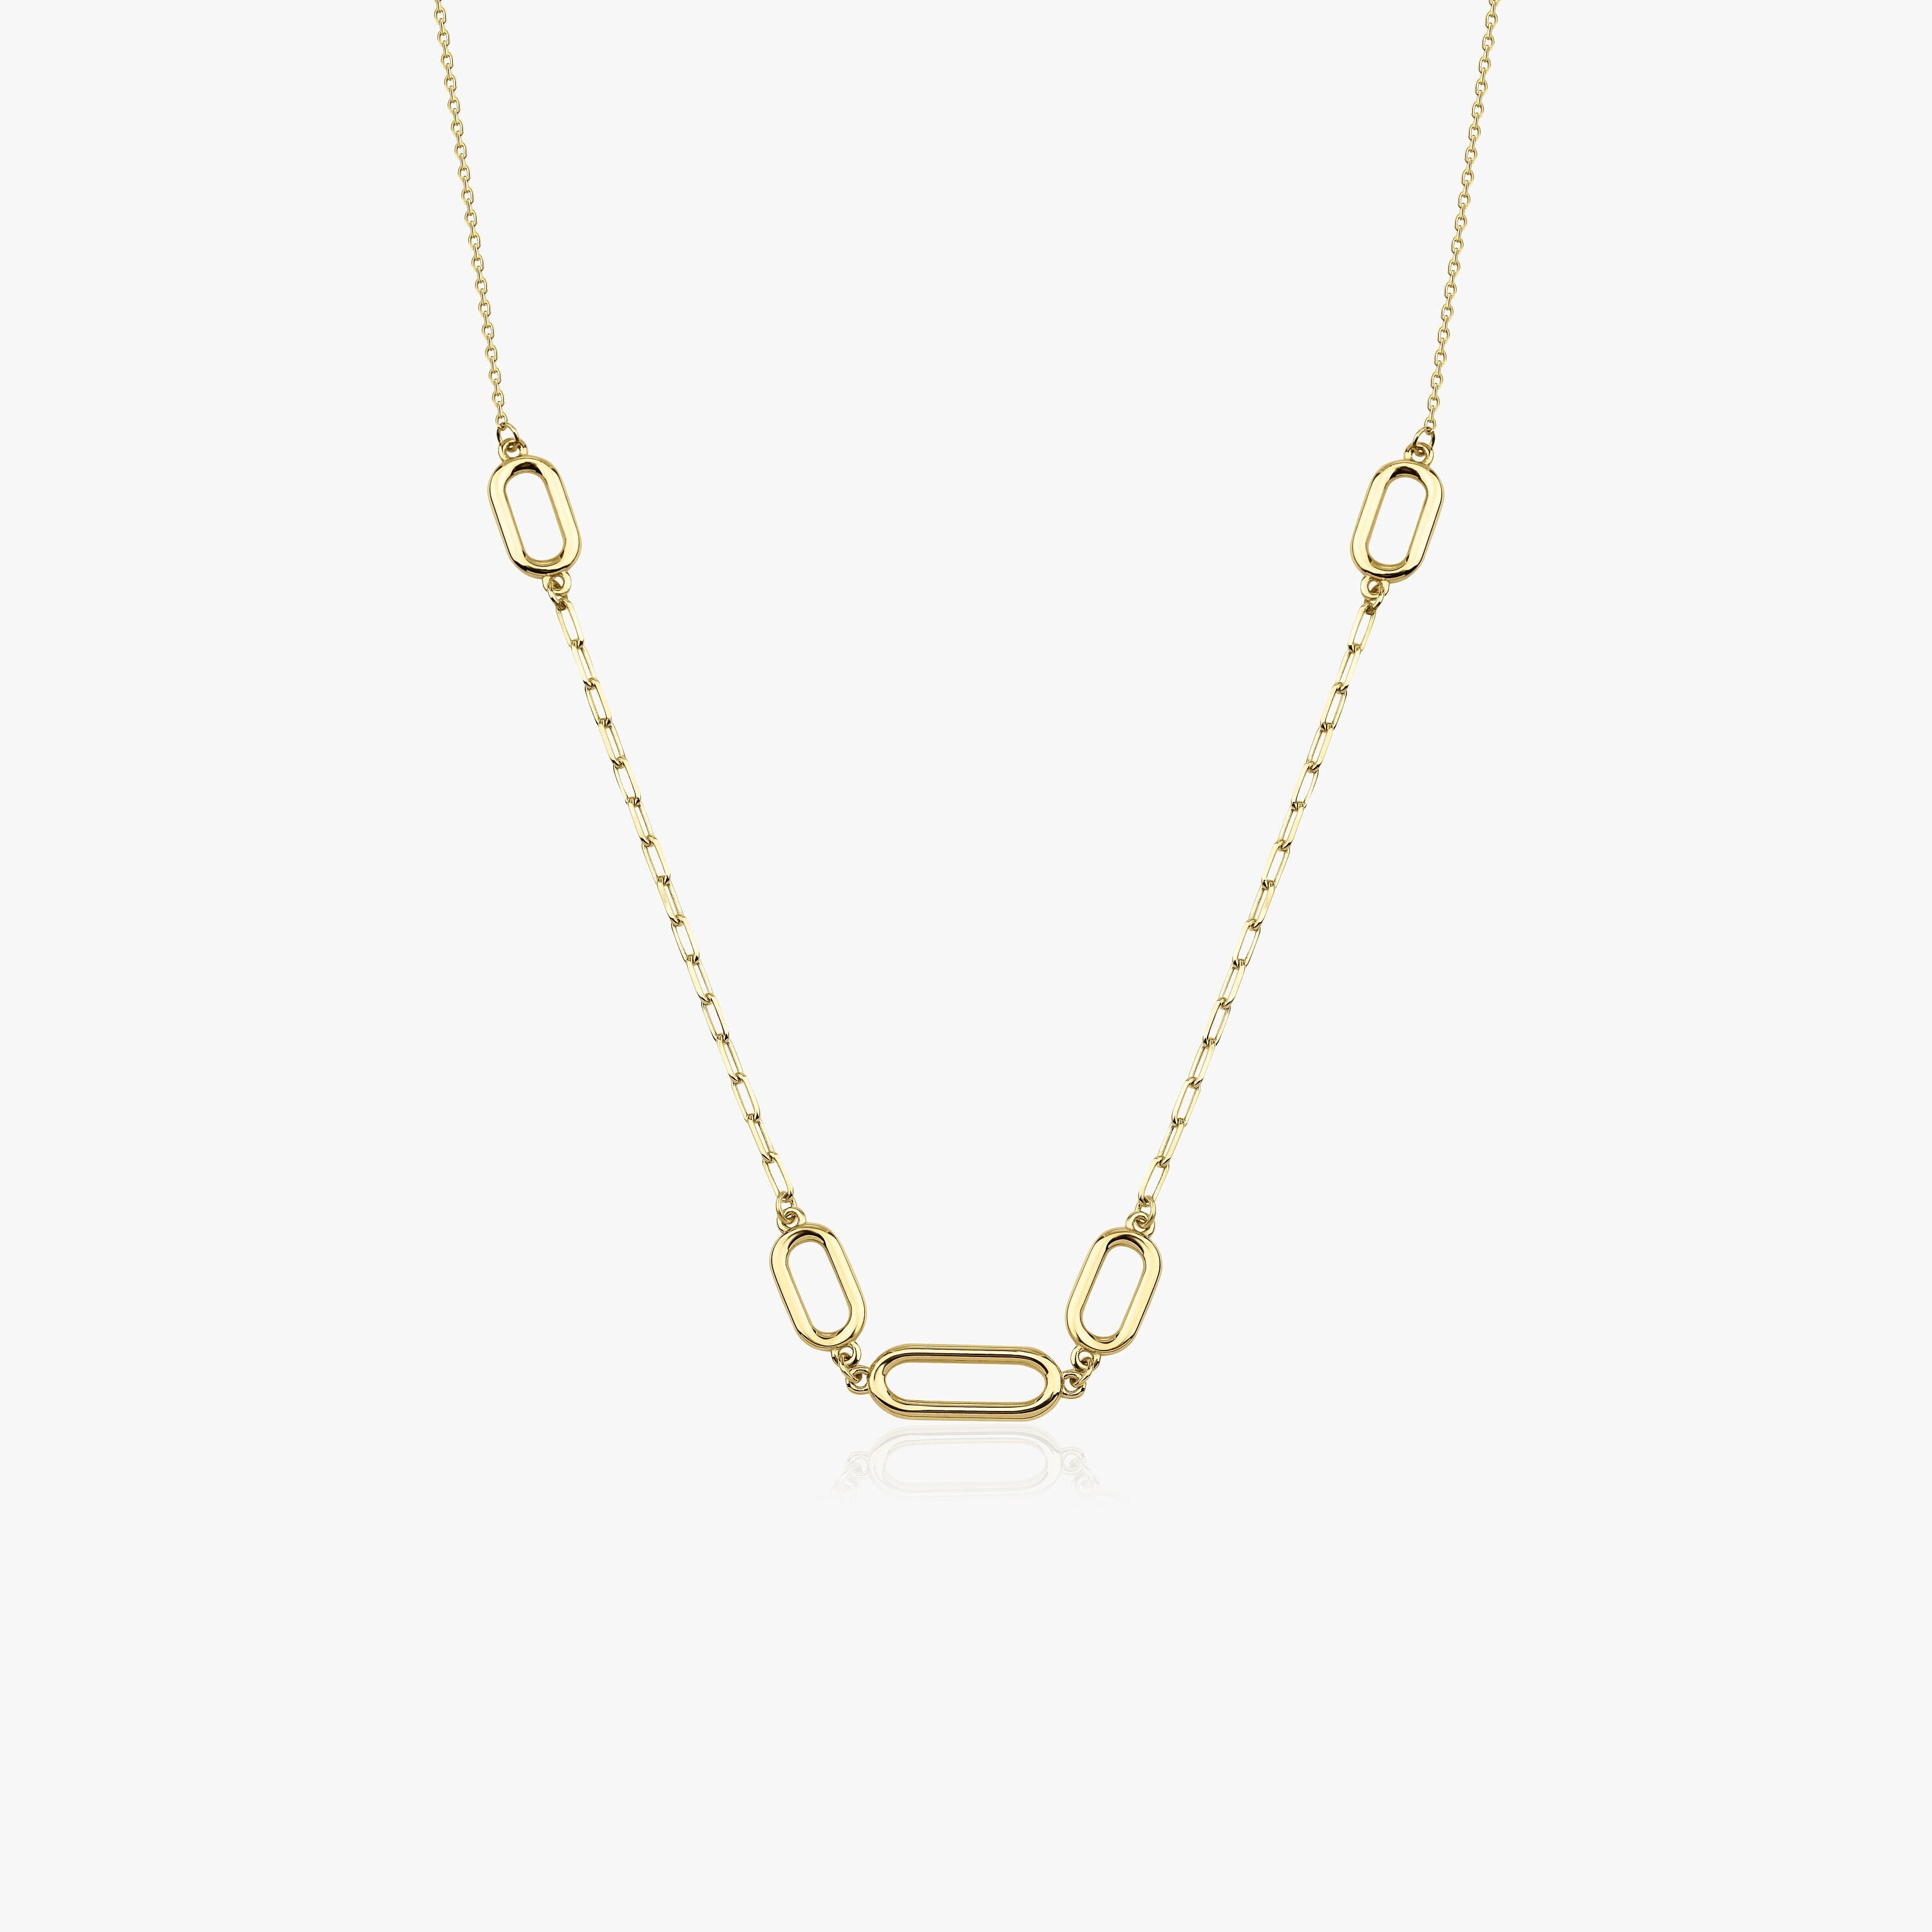 14K Gold Link Necklace